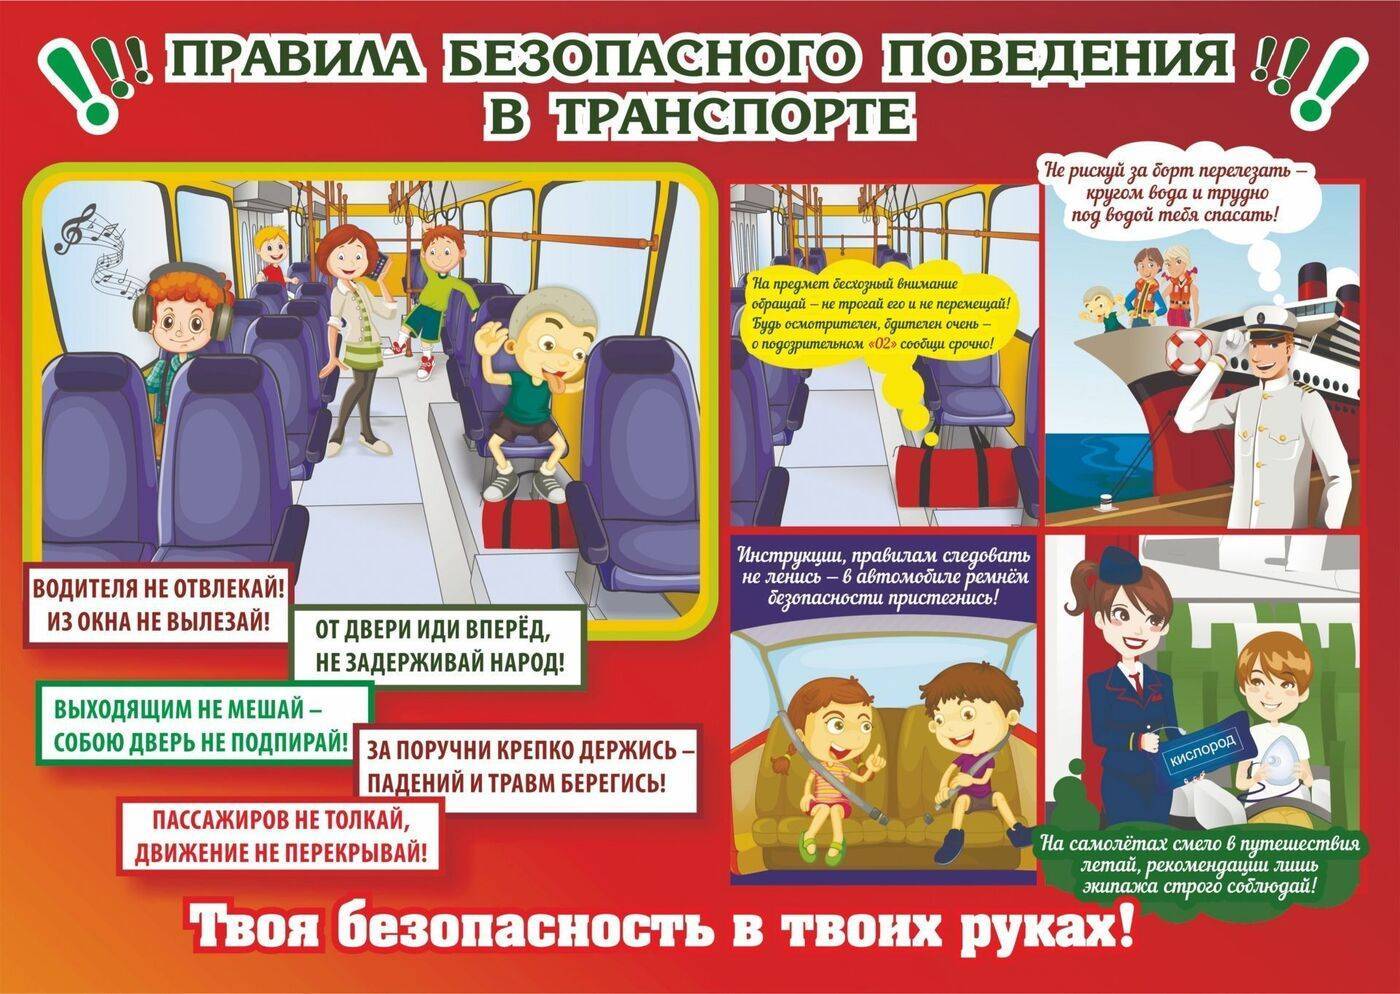 Правила поведения для пассажиров общественного транспорта